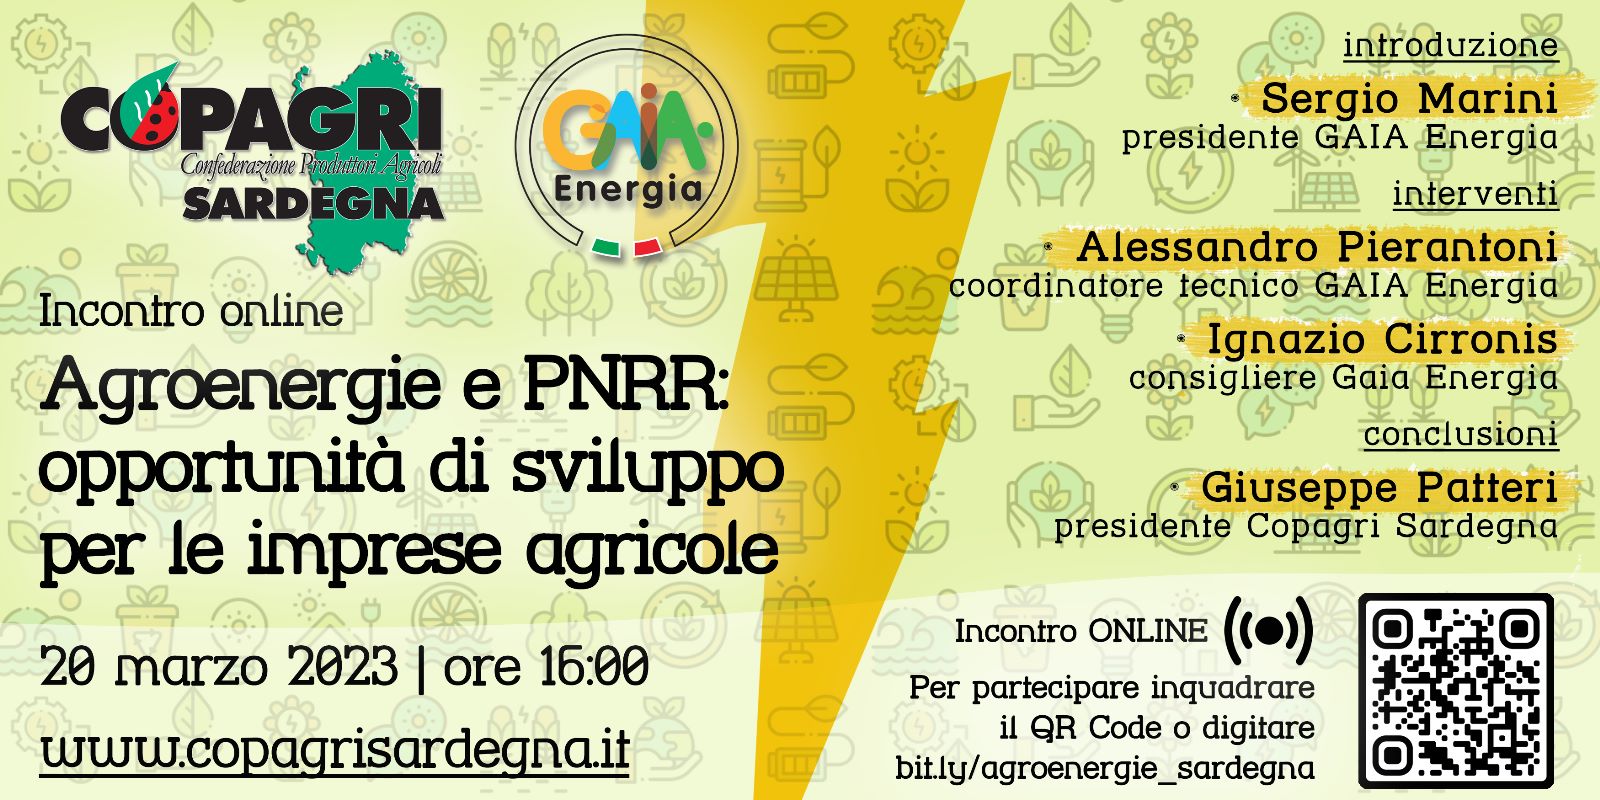 Agroenergie e PNRR: opportunità di sviluppo per le imprese agricole. Incontro online sulla piattaforma bit.ly